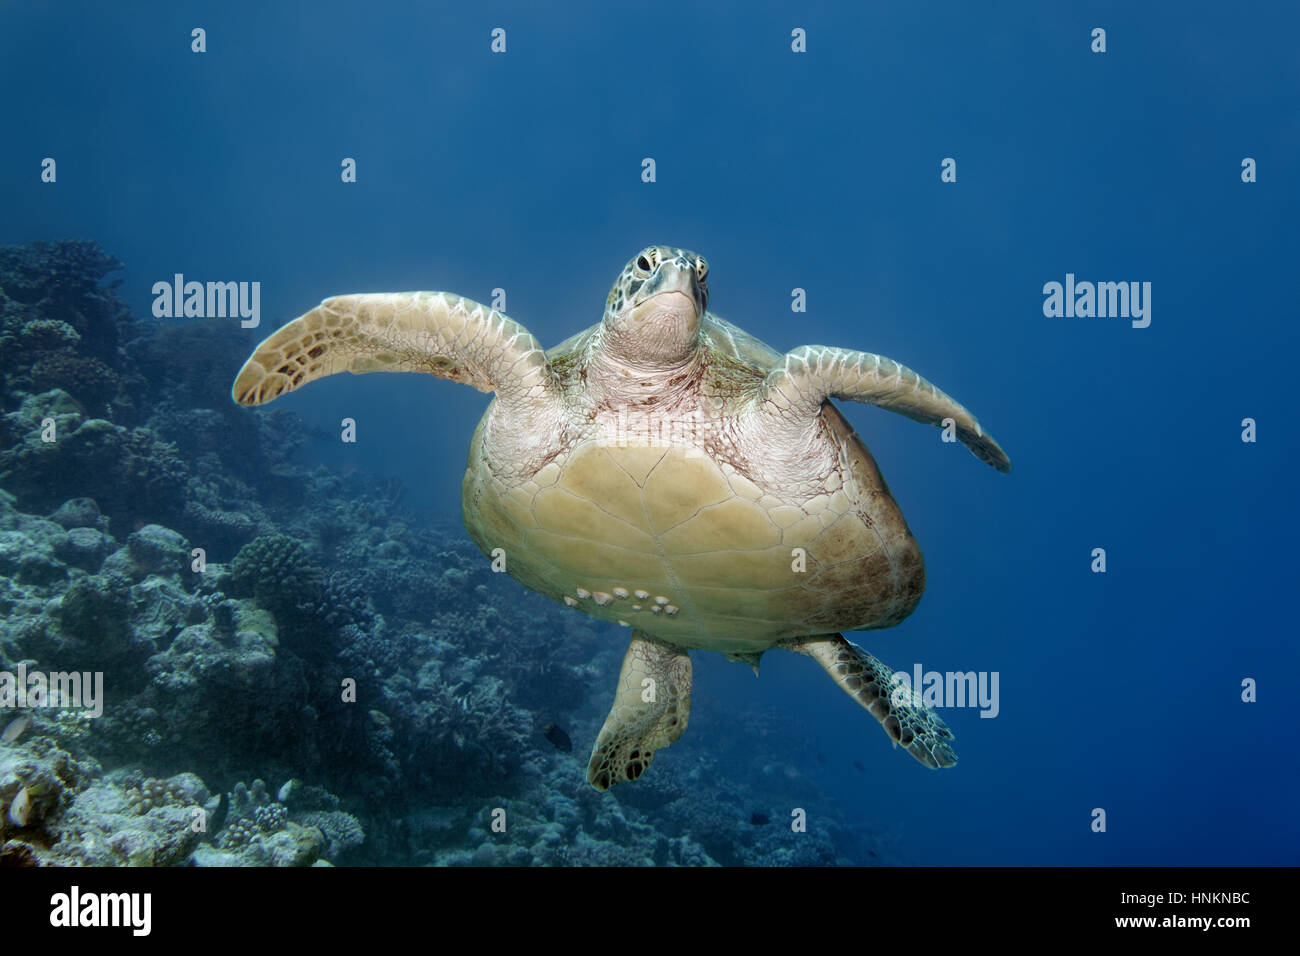 La tortuga verde (Chelonia mydas) con percebes (Balanidae) nadando en el arrecife, el Océano Índico, Maldivas Foto de stock